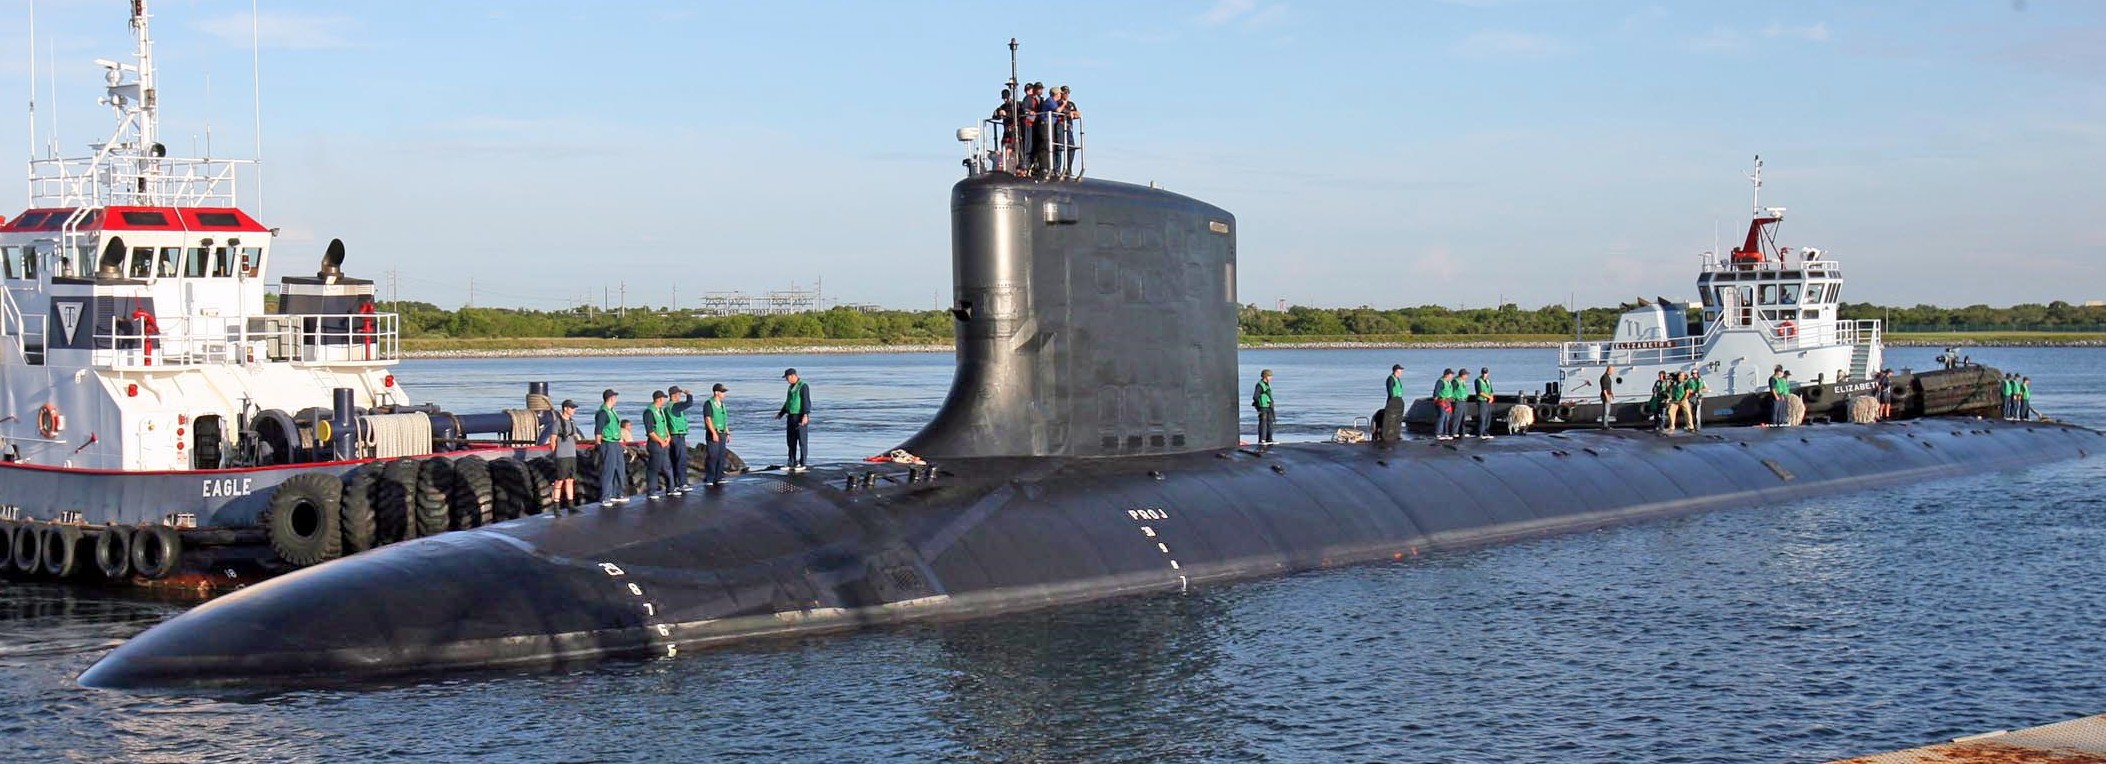 ssn-775 uss texas virginia class attack submarine navy 2006 40 port canaveral florida